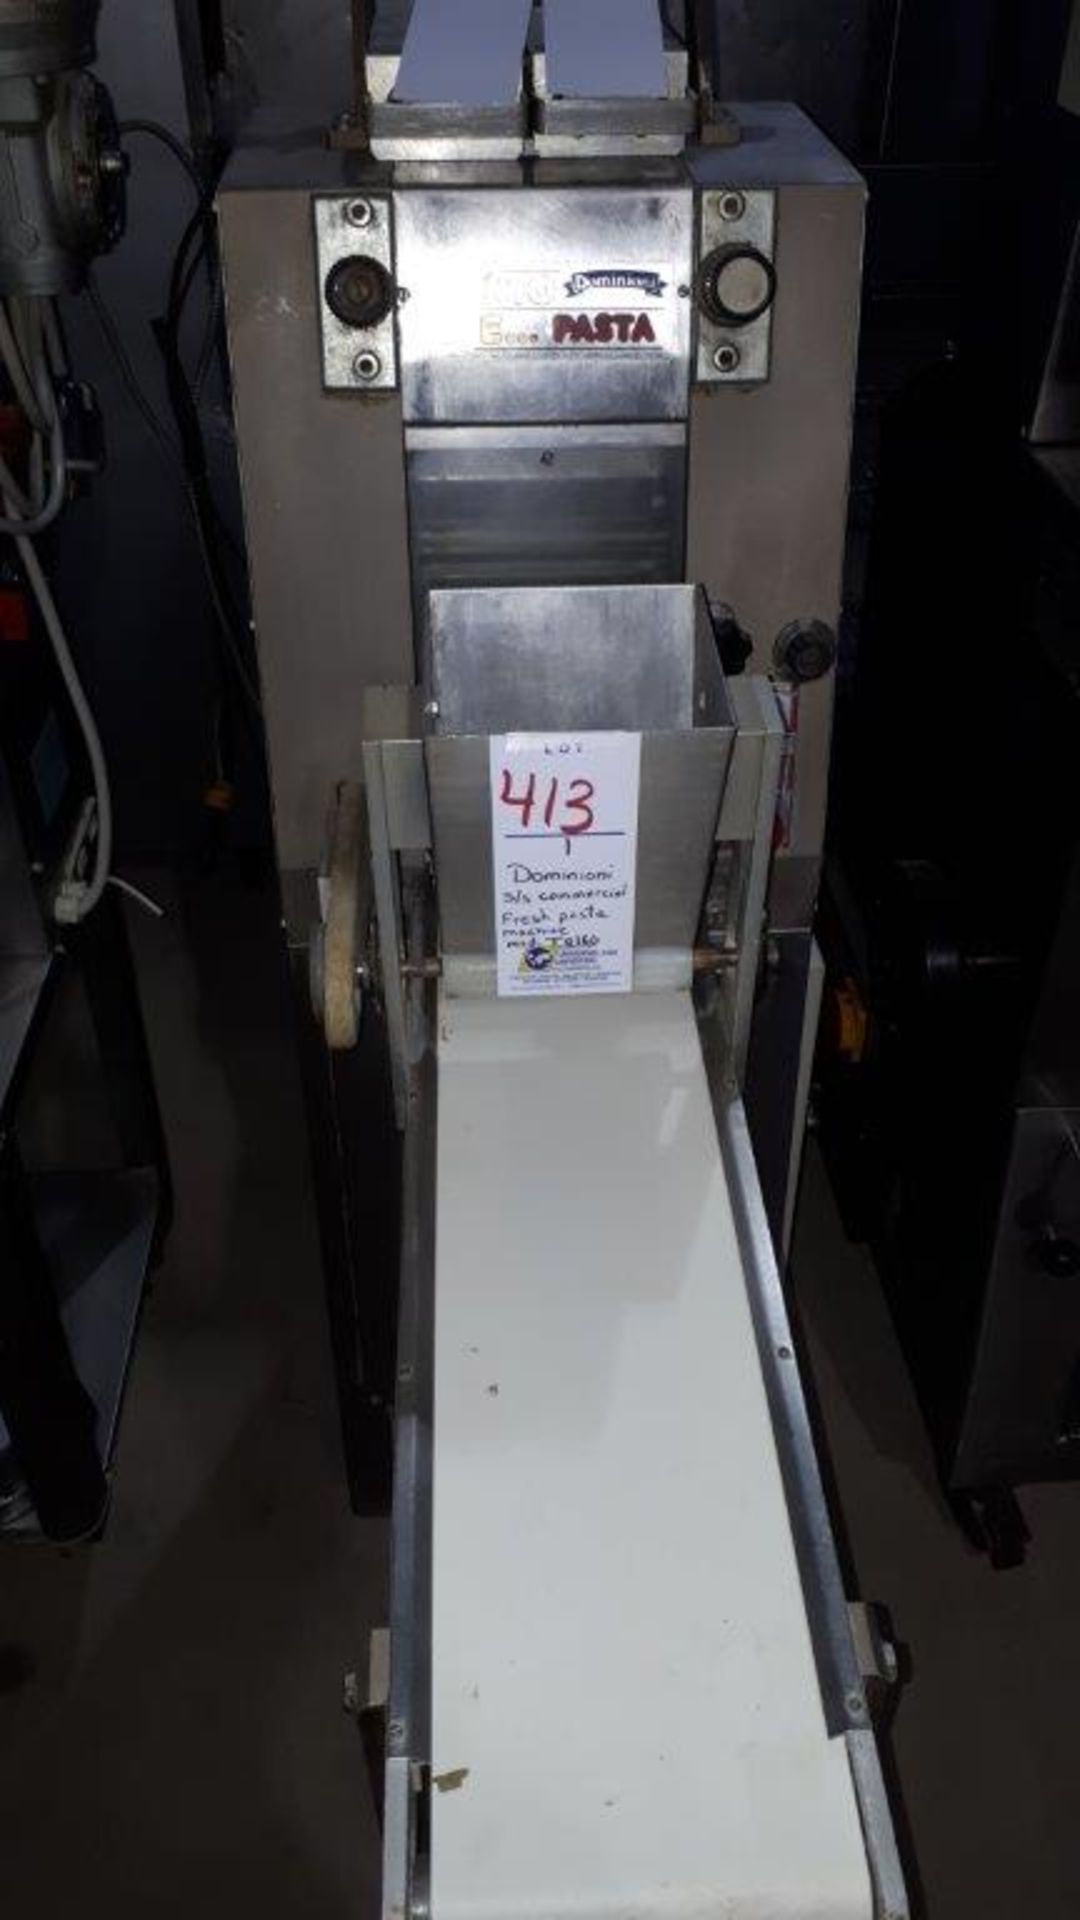 Dominioni S/S Commercial fresh pasta machine, model: TQ160